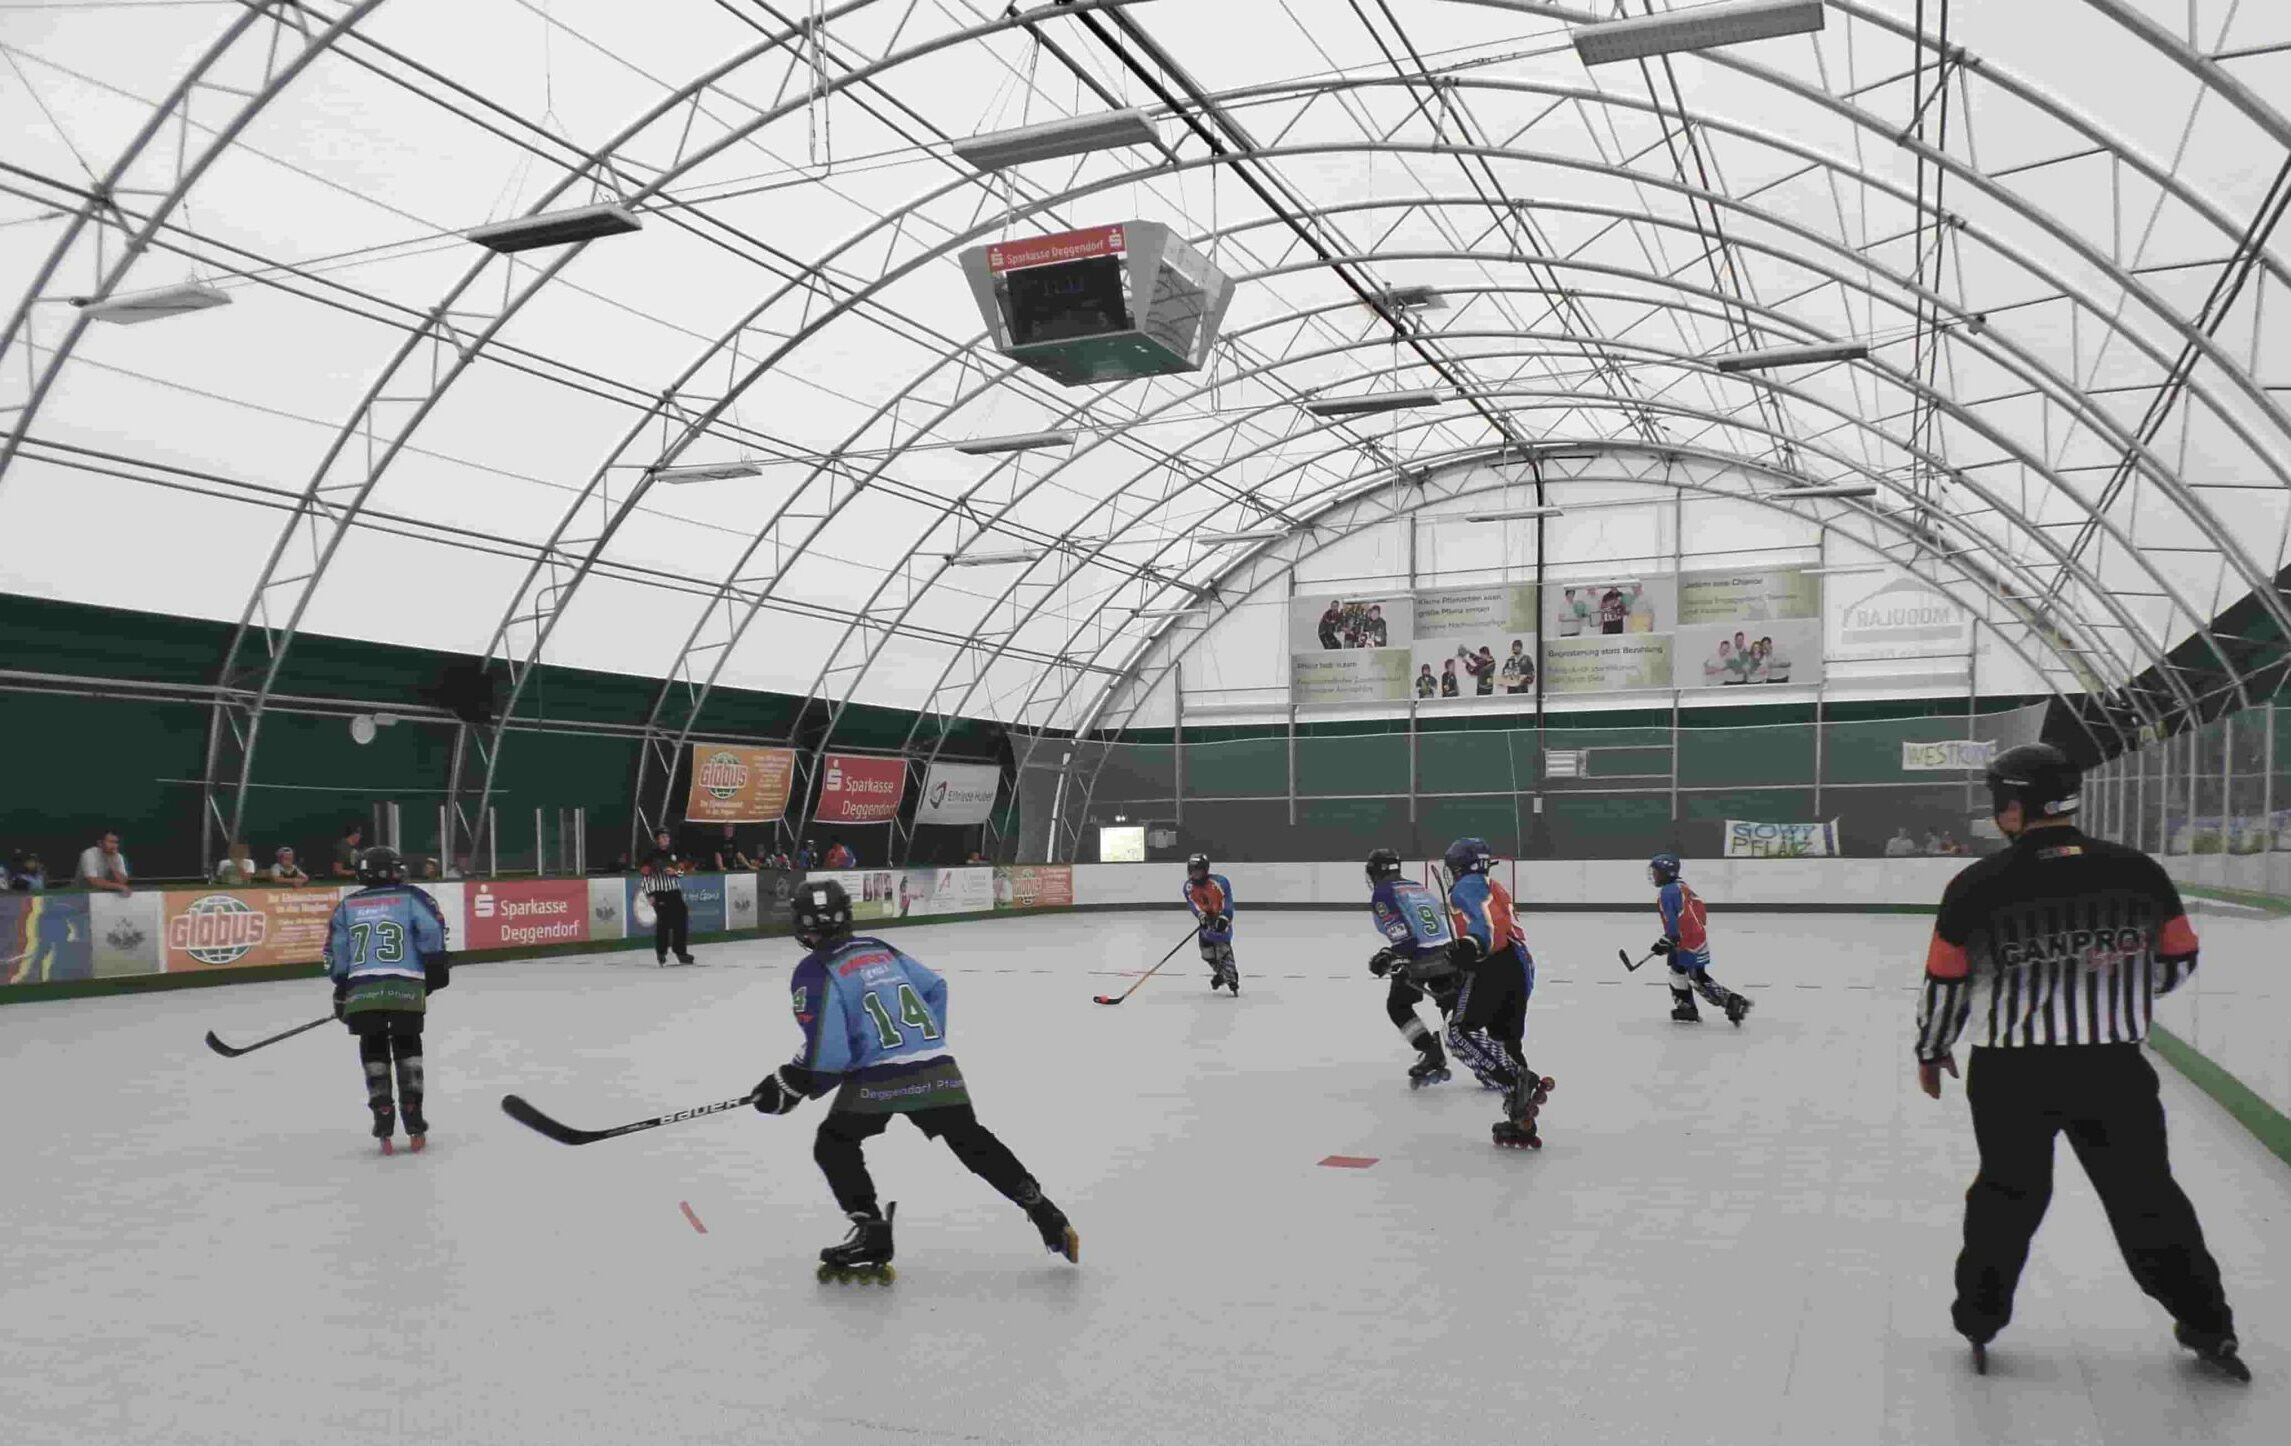 Modular Einsatzgebiete Industriehallen Giebelhallen Freizeithallen Eishockeyhalle Innenansicht